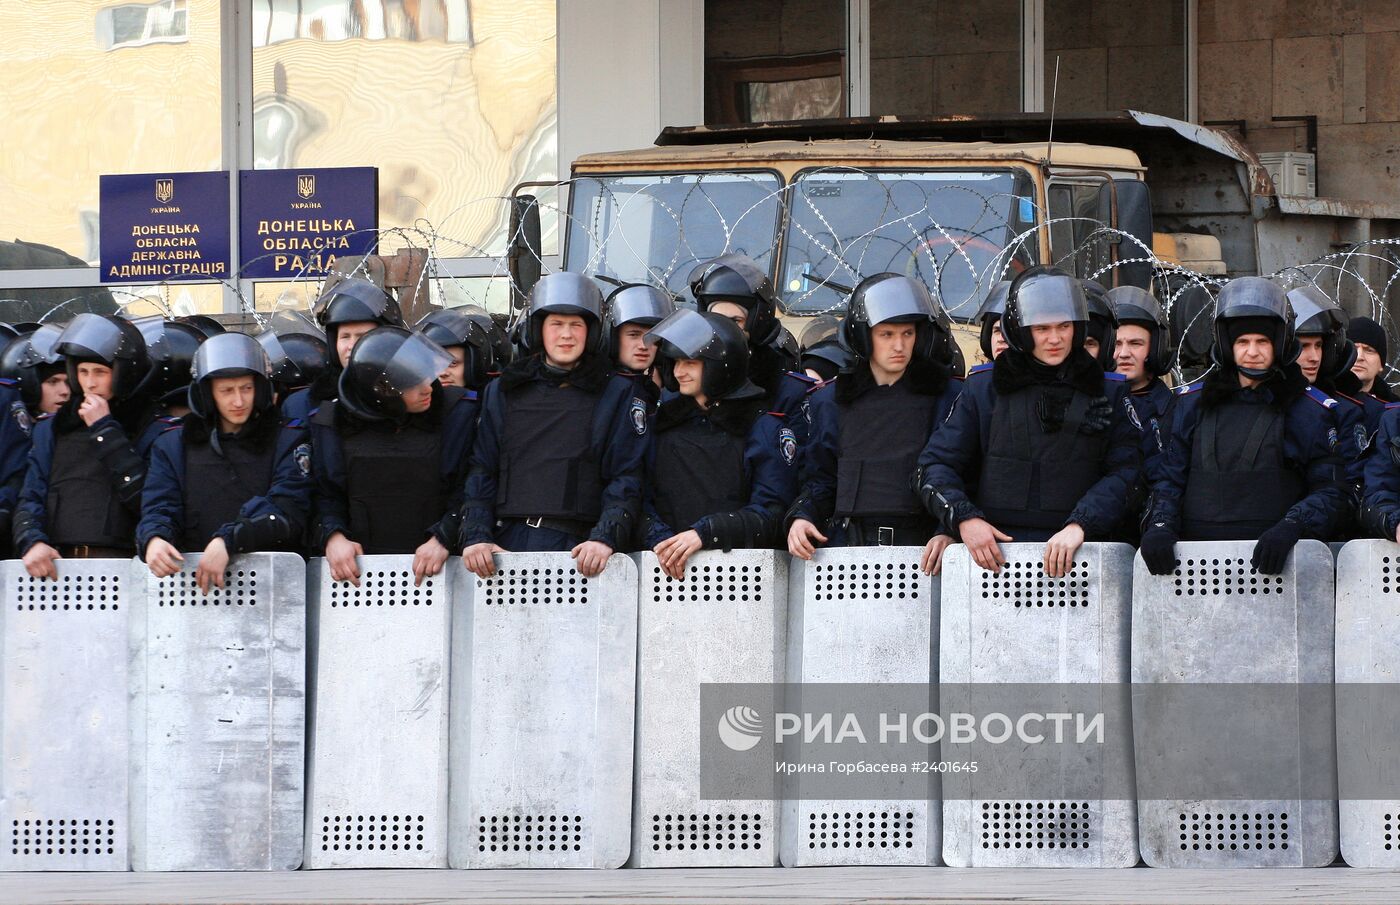 Митинг в поддержку В.Януковича в Донецке